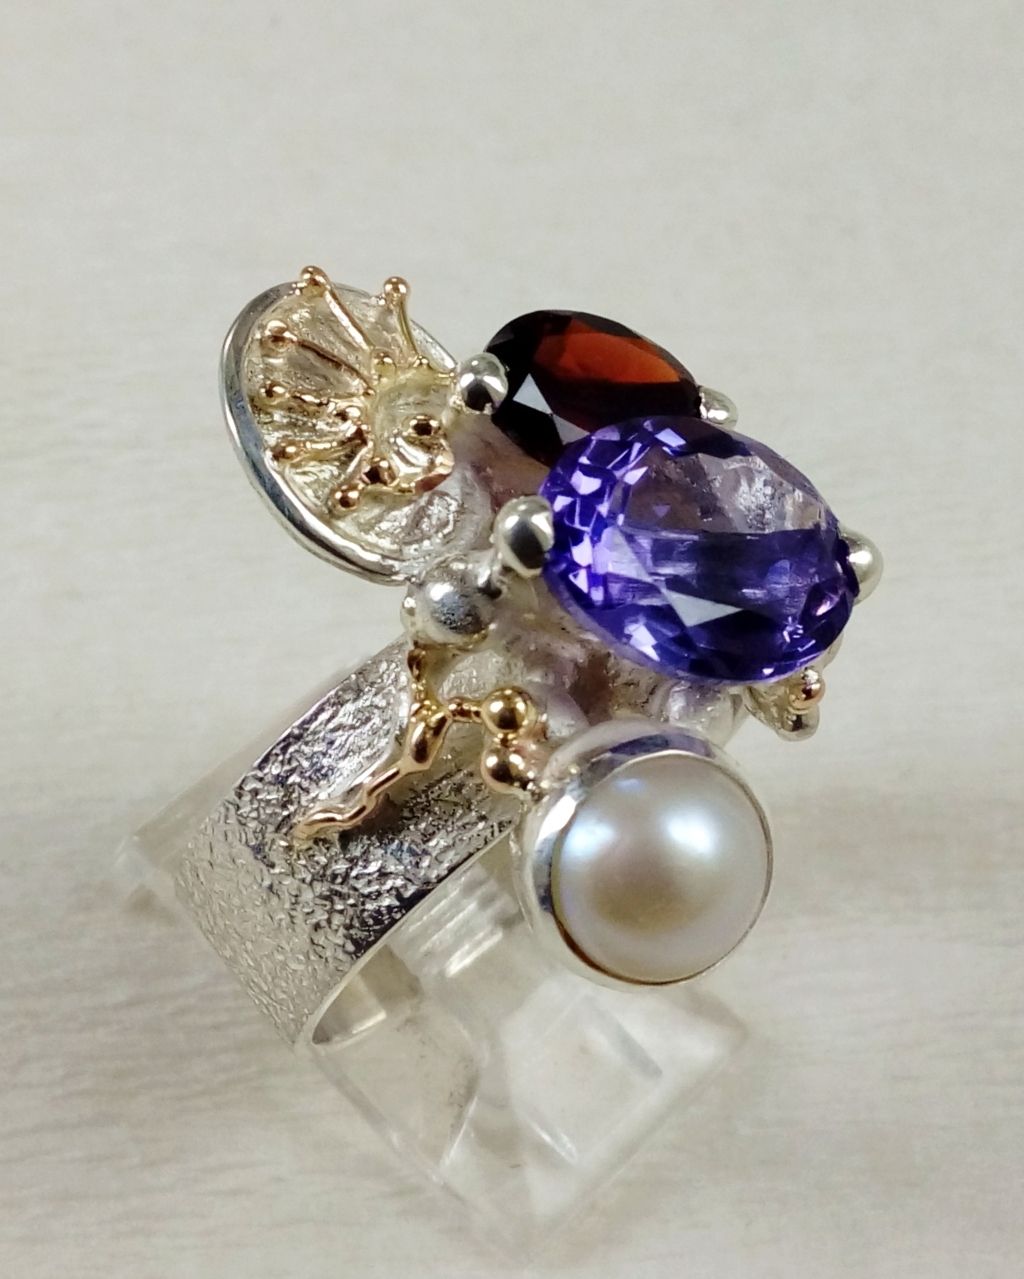 Gregory Pyra Piro ručně vyrobený prsten 3035, jedinečný kombinovaný drahokamový prsten, prsten s ametystem a granátem, prsten s fazetovanými drahokamy a perlami, prsten ze zlata a stříbra, ručně vyrobený prsten od řemeslníka, prsteny prodávané v galeriích, šperky s doručením až k vám domů v Evropské unii, šperky s doručením až k vám domů v Ostravě, šperky s doručením až k vám domů v Čechách